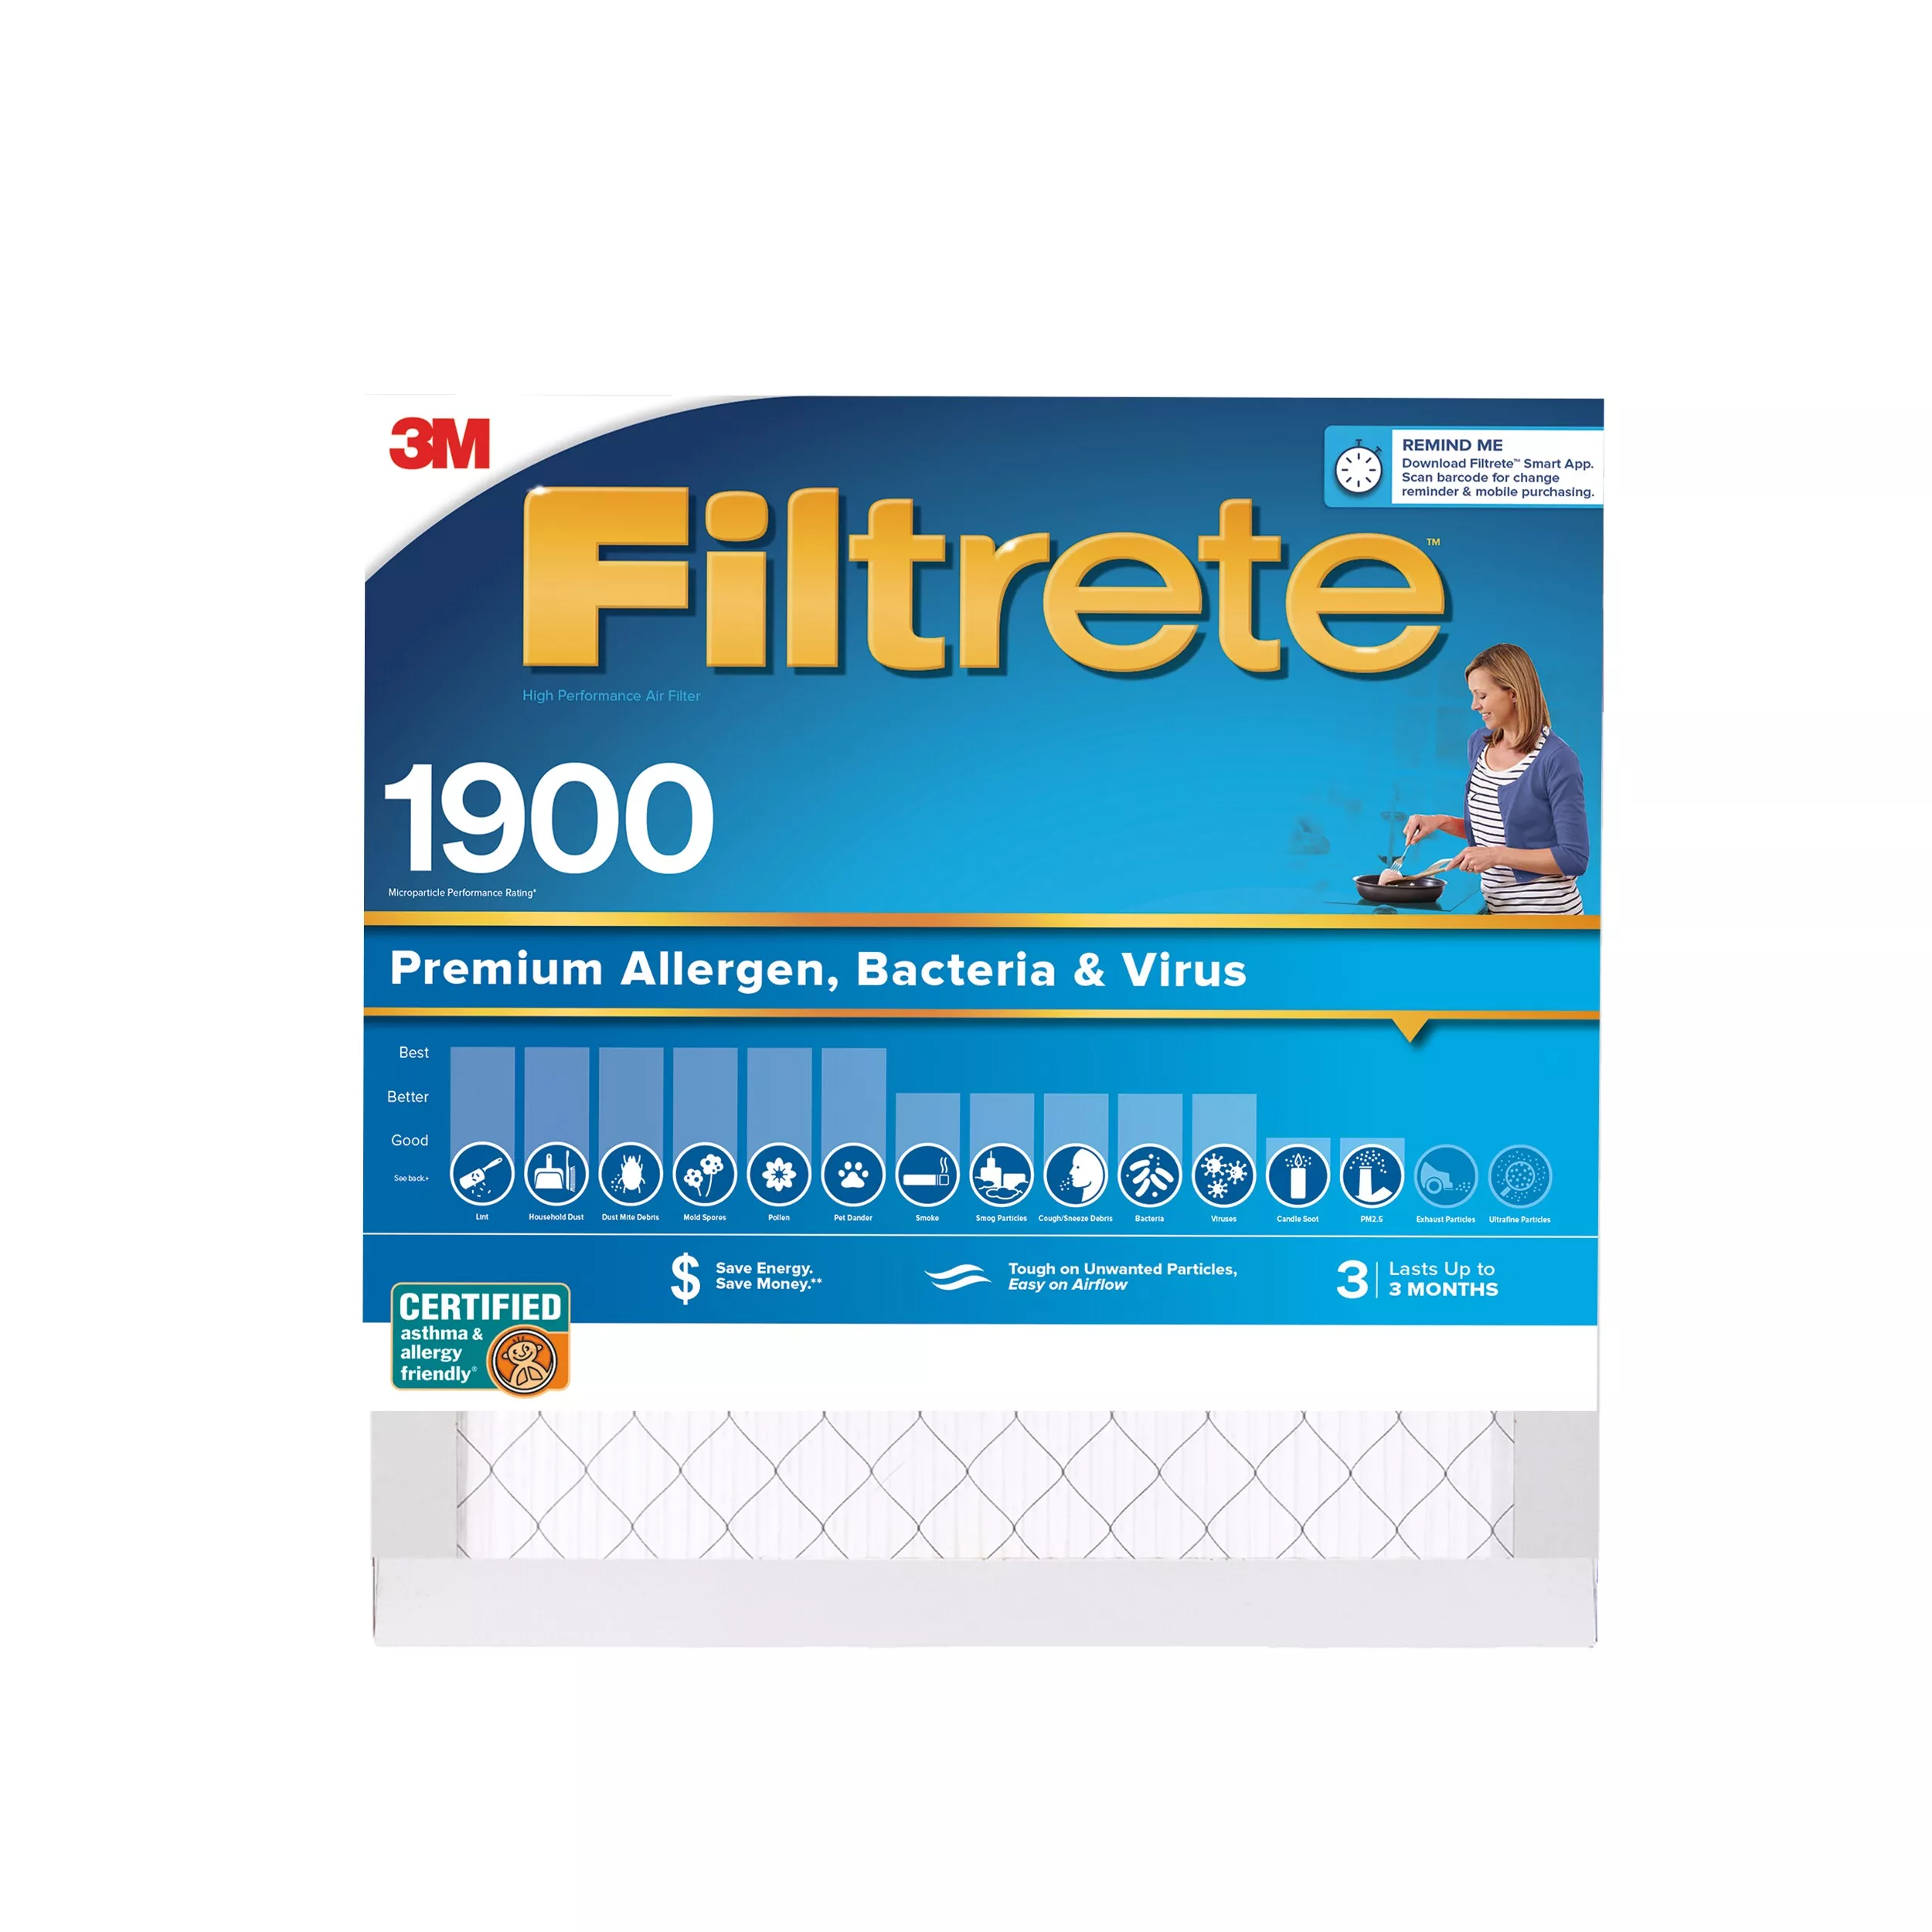 Filtrete™ High Performance Air Filter 1900 MPR UA02-4, 20 in x 20 in x 1 in (50.8 cm x 50.8 cm x 2.5 cm)